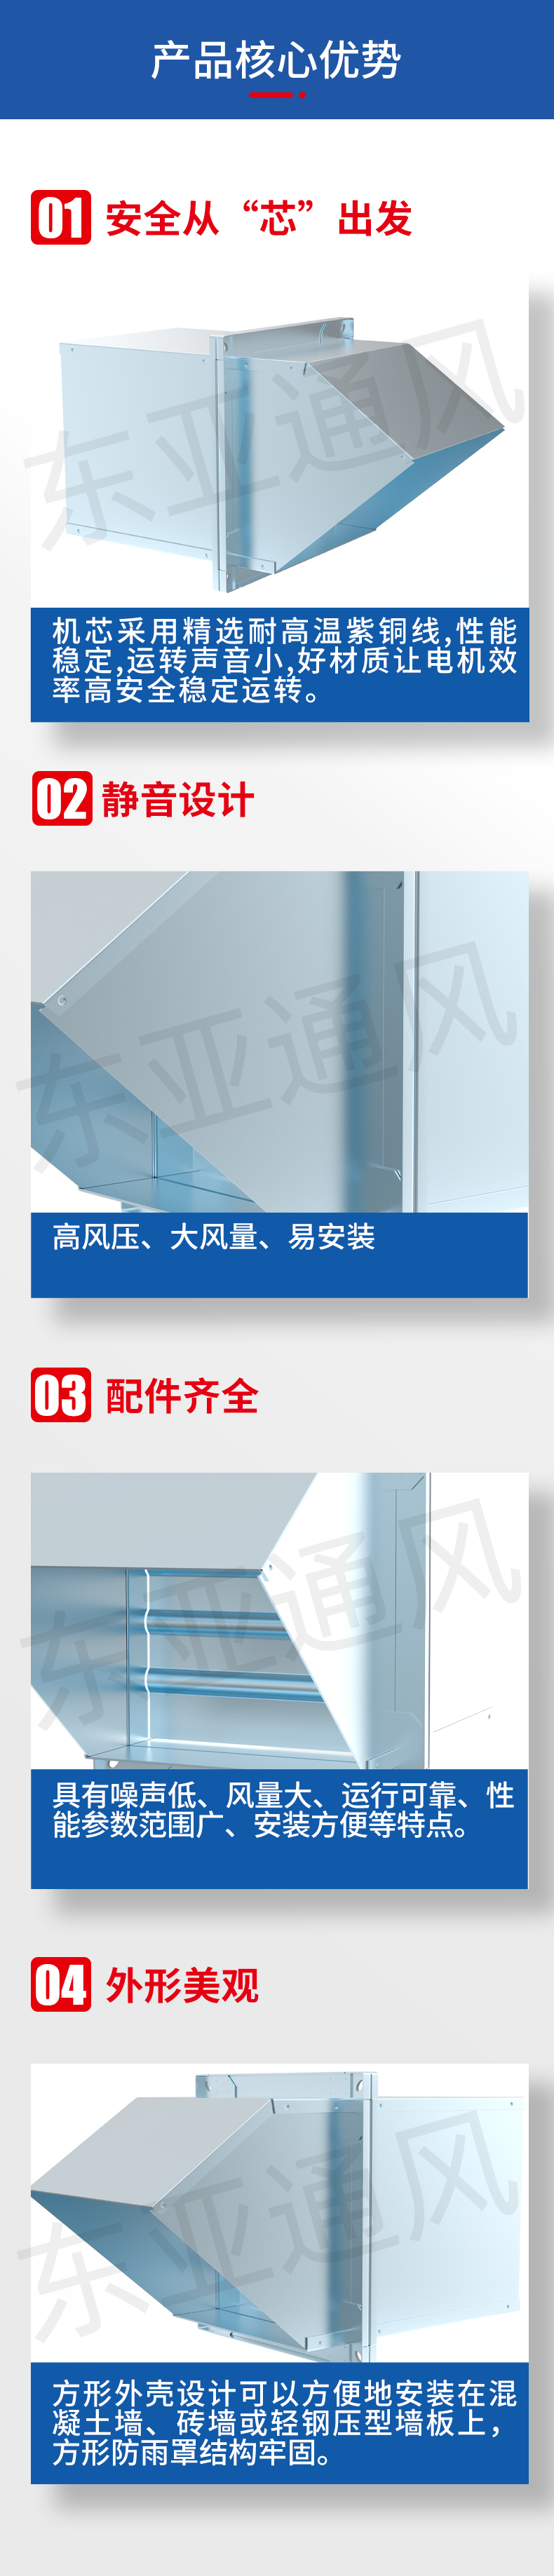 详情页-DWEX(WEX)宝博电竞(中国)股份有限公司边墙式通、排风机_02.jpg